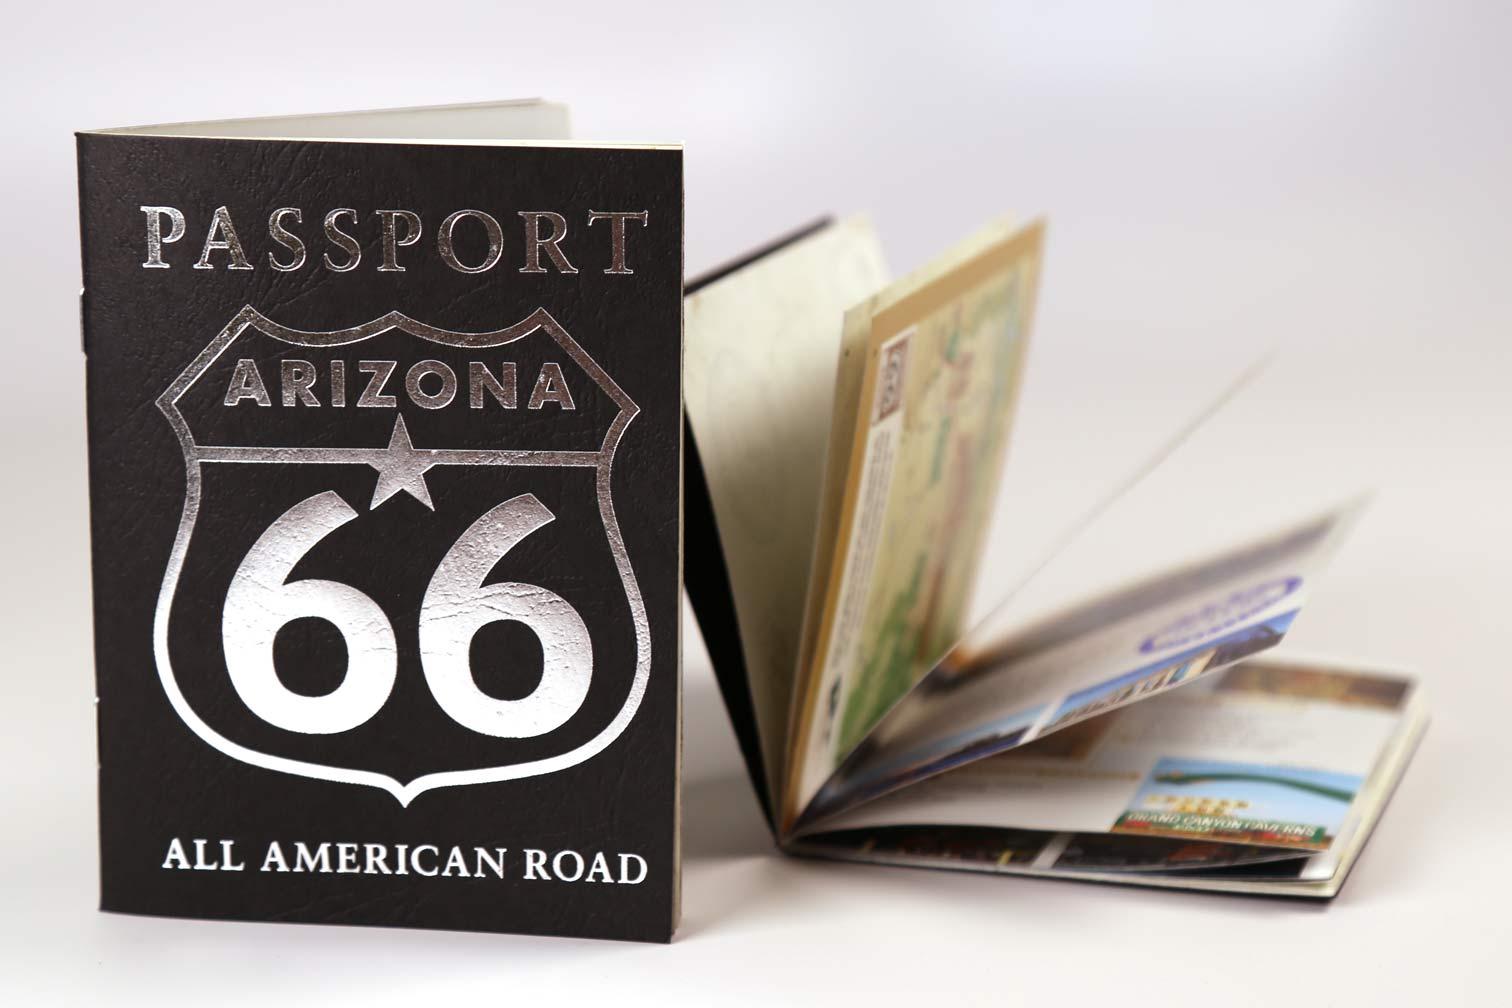 Arizona Route 66 Passport travel guide